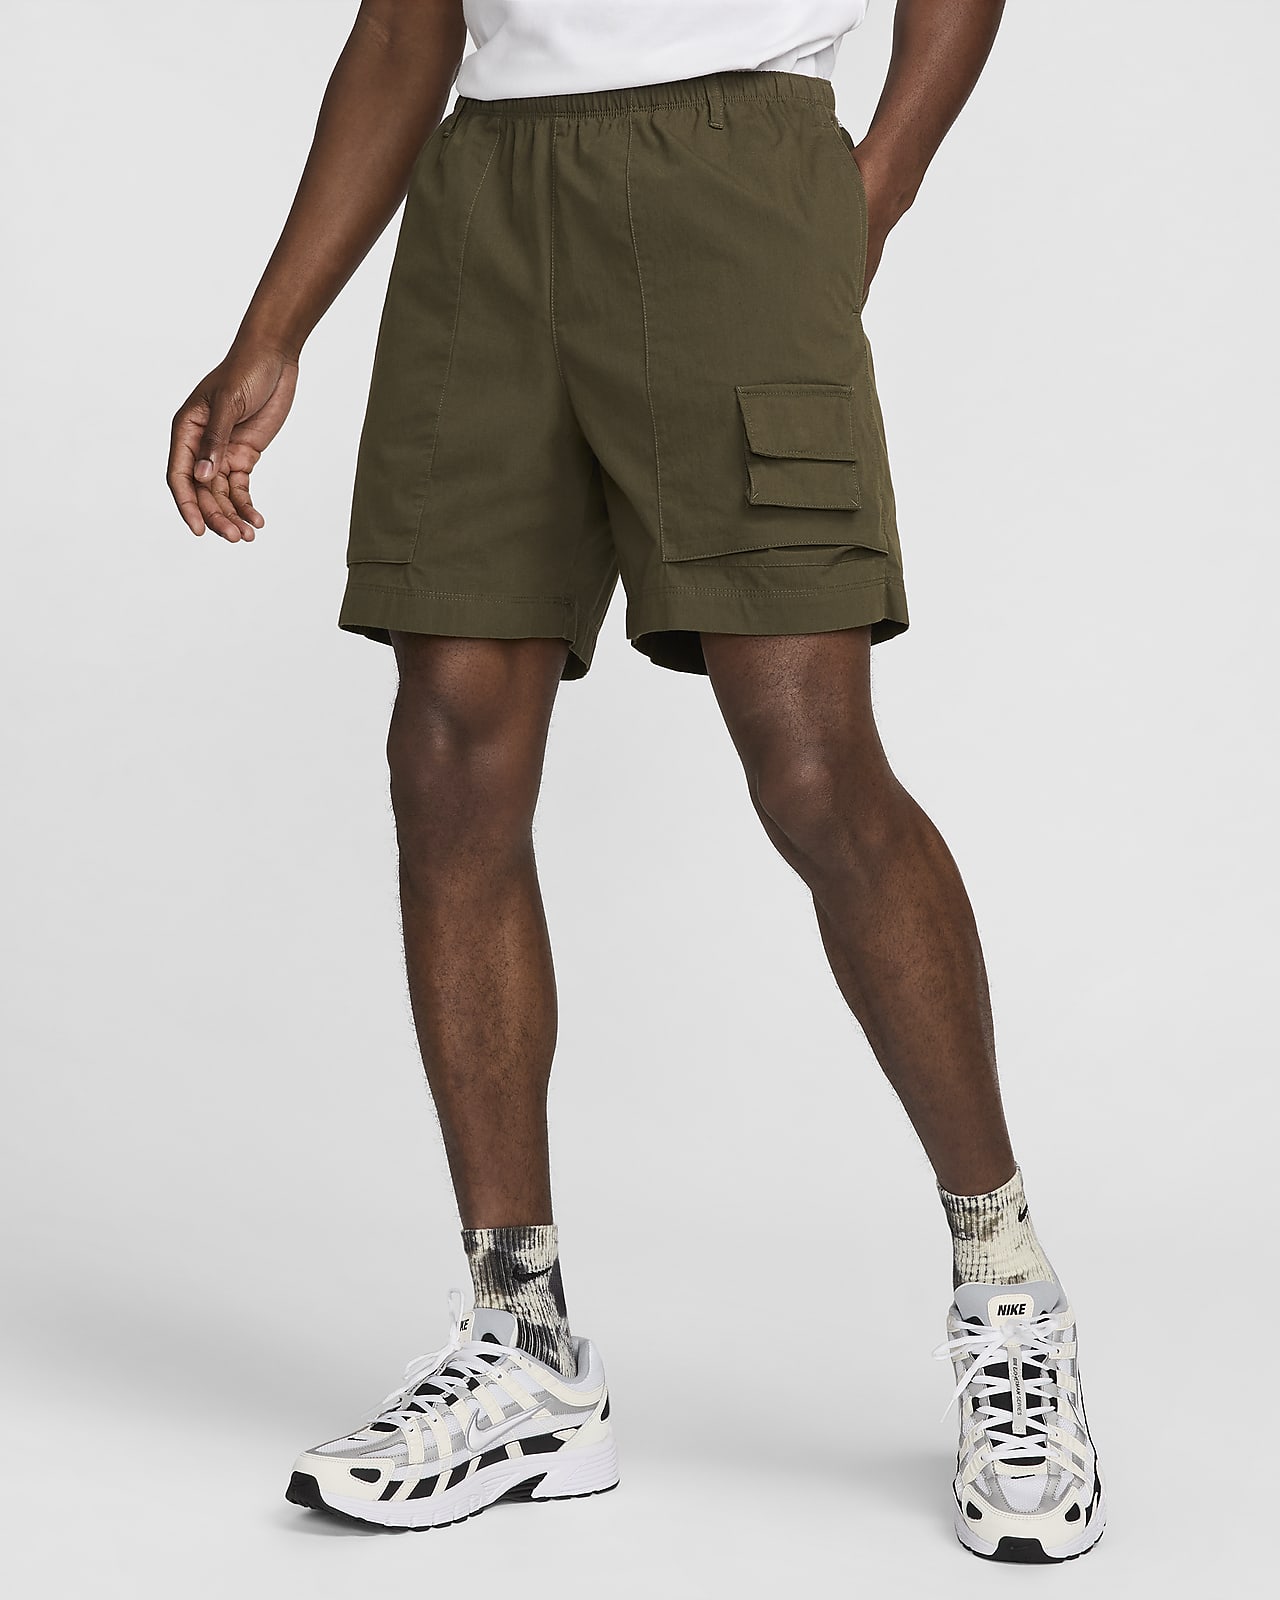 Nike Life Pantalón corto Camp - Hombre